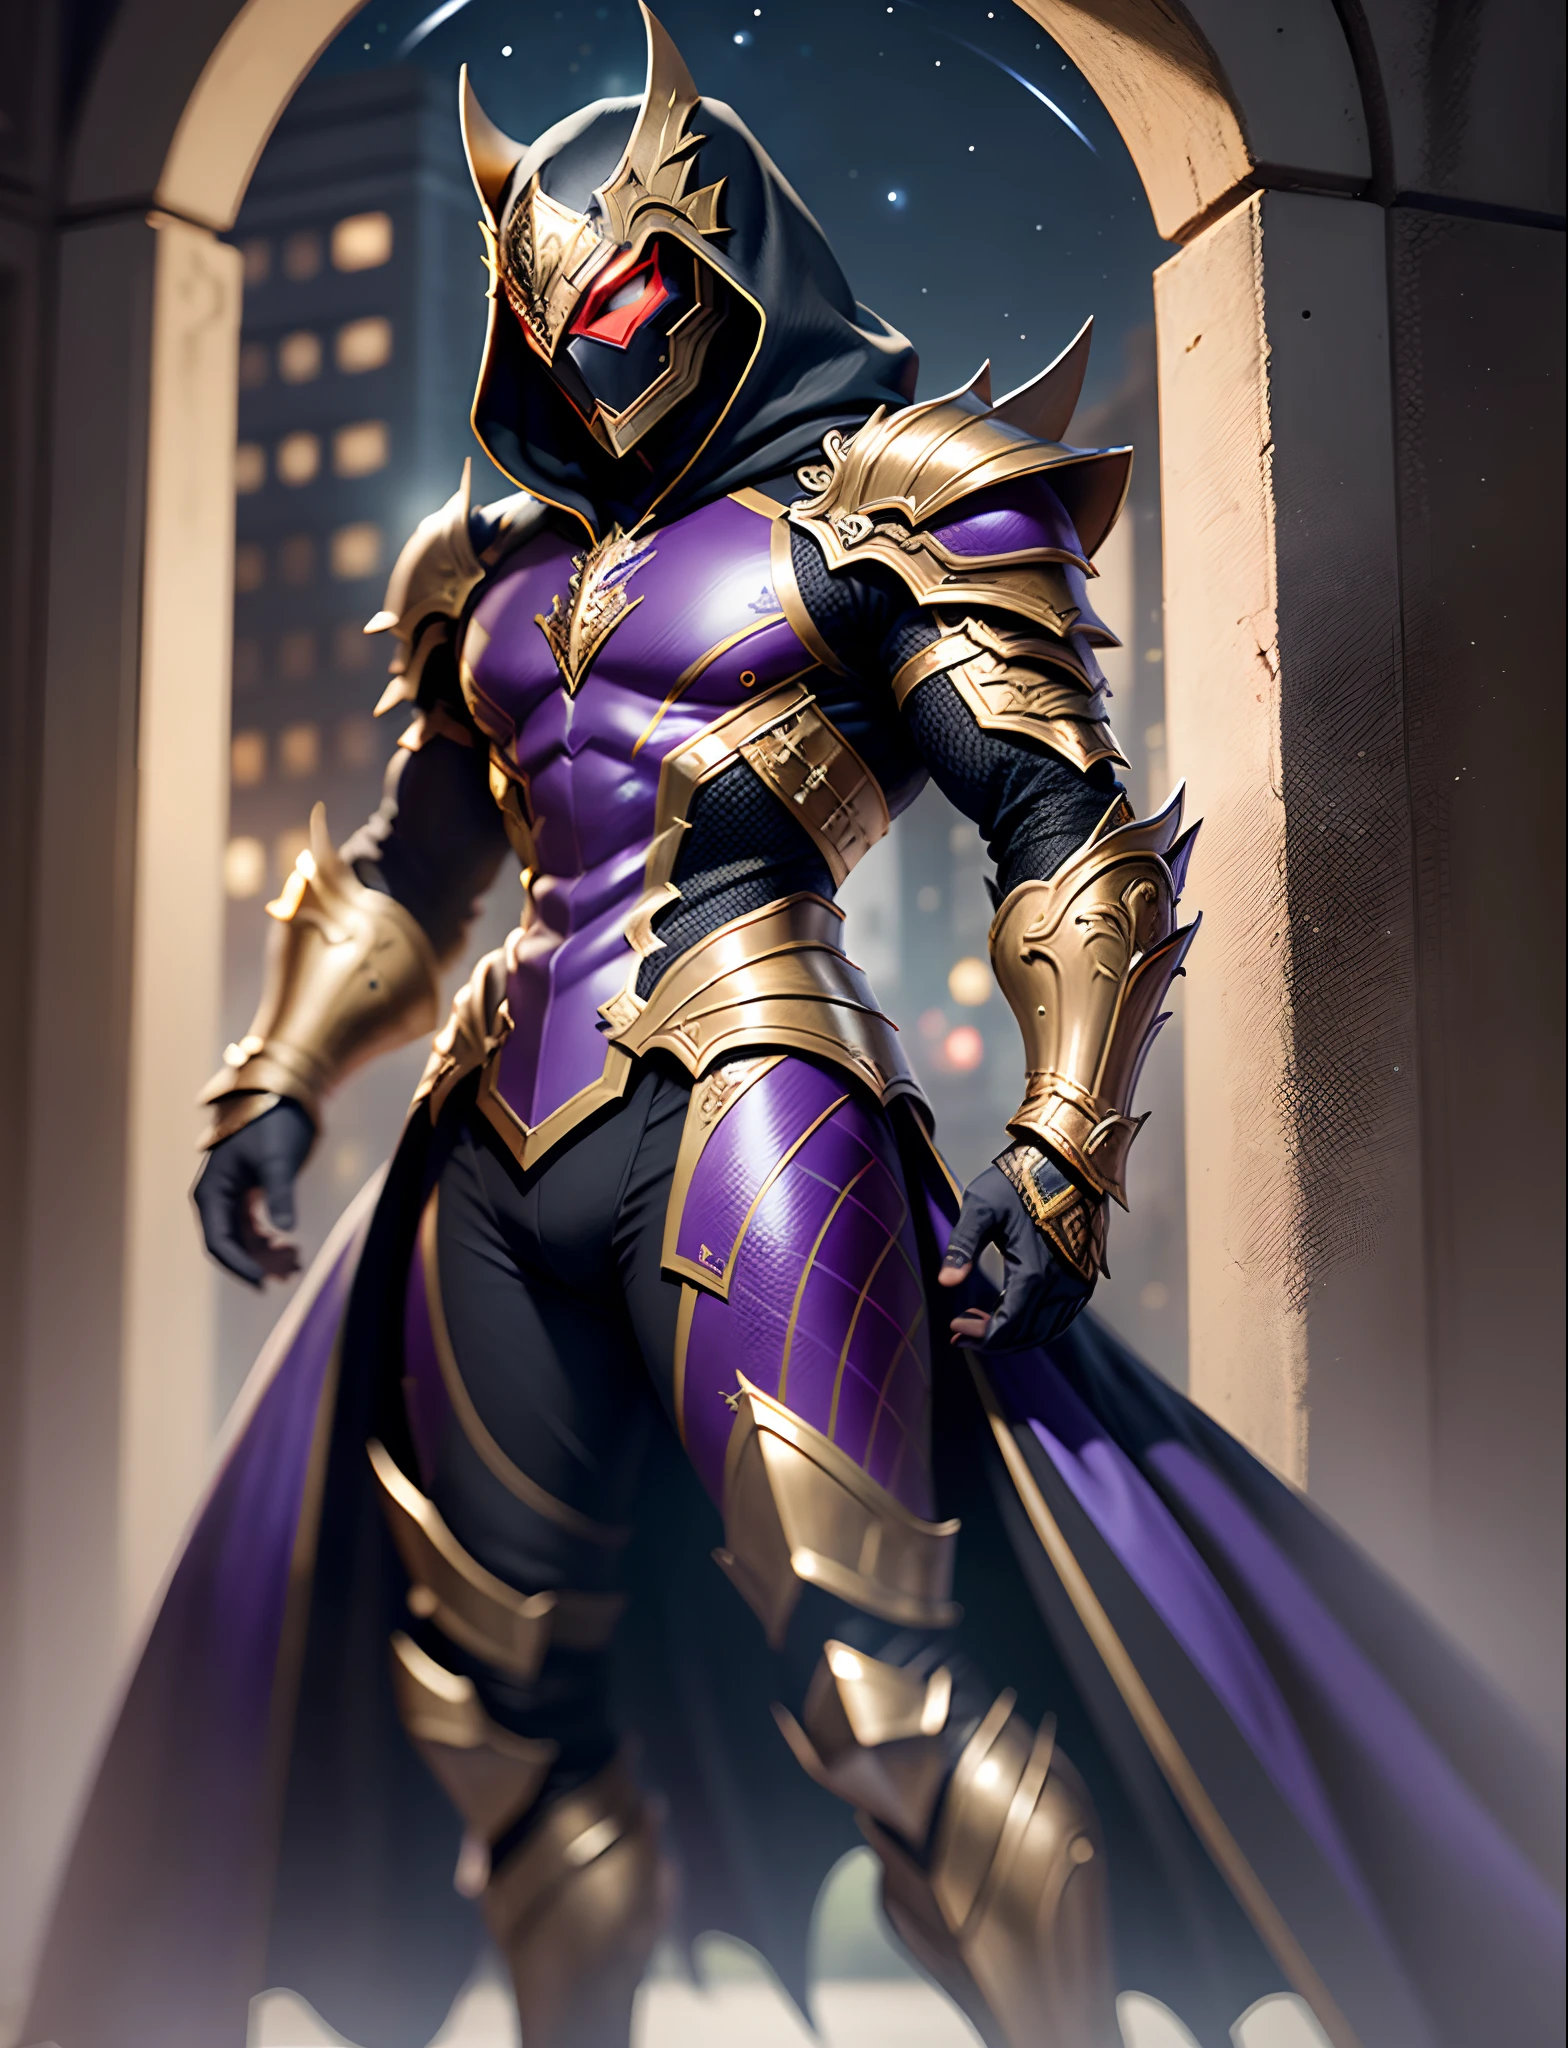 เต็มตัว hyper realistic black purple hooded sharp ornate saga armor man suite, หน้ากากแวร์, เกราะคมเต็ม, นีออนสีแดง, กลางคืน, เกราะรายละเอียดพิเศษ, รายละเอียดมากมาย, มุมมองด้านหน้า, (กลางคืน:2) พื้นหลังปราสาท, เต็มตัว, เต็มตัว, ร่างกายทั้งหมด, มุมมองด้านหน้า, มุมกว้าง, รายละเอียดพิเศษ, ความละเอียดพิเศษ, คุณภาพพิเศษ, เครื่องยนต์อันเรียล 5, แสงภาพยนตร์, ความชัดลึก, head ออกจากกรอบ, ออกจากกรอบ, feet ออกจากกรอบ, รายละเอียดสุดยอด, 16k, คุณภาพสูง, ได้รับรางวัล, คุณภาพดีที่สุด, ผิวที่มีพื้นผิว, รายละเอียดสูง, รายละเอียดสุดยอด